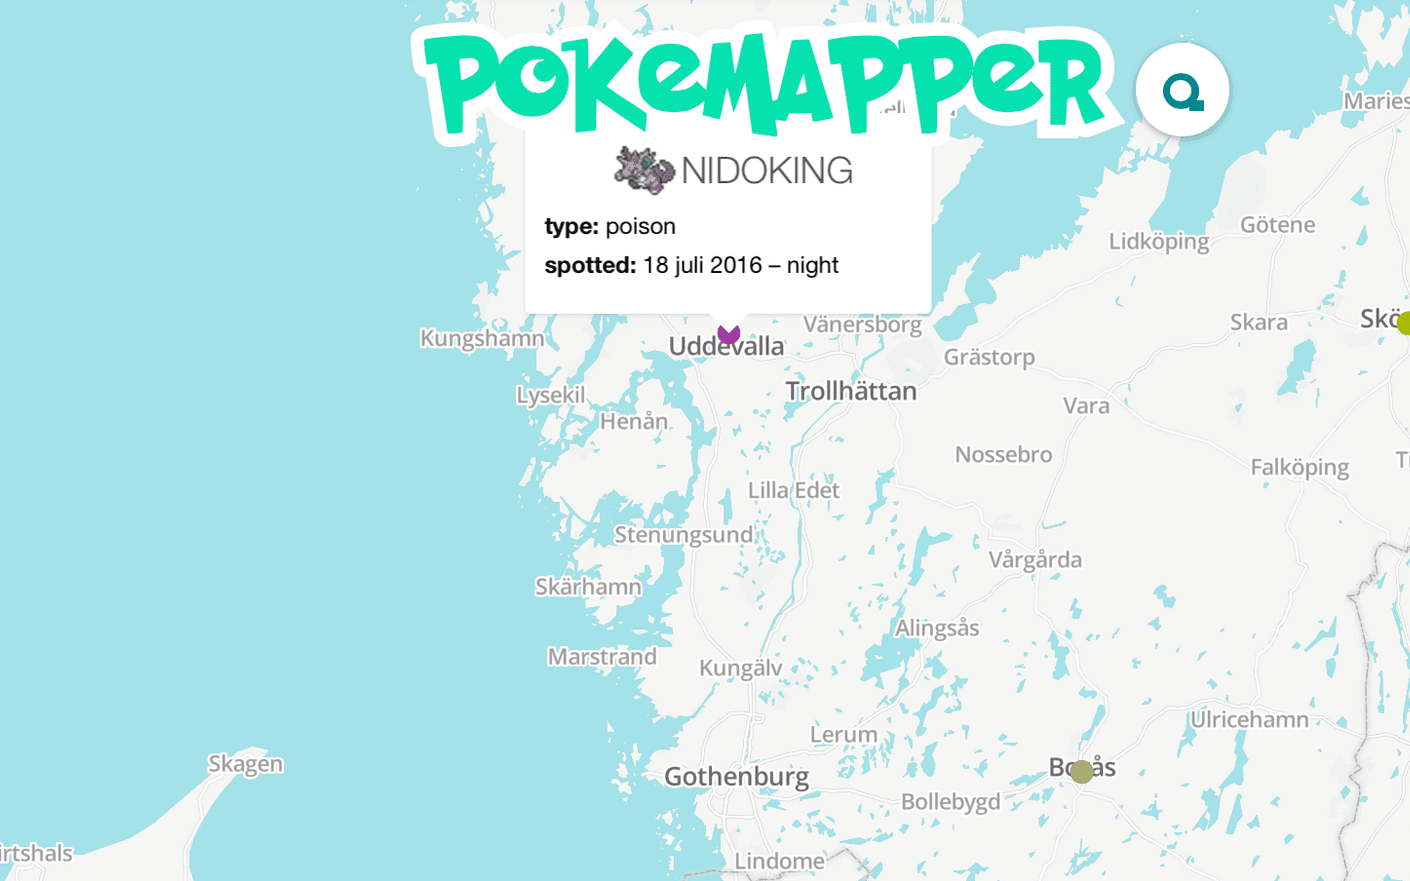 Här kan du ser var andra användare fångat Pokemons. Än så länge ser det ganska glest ut i Sverige.